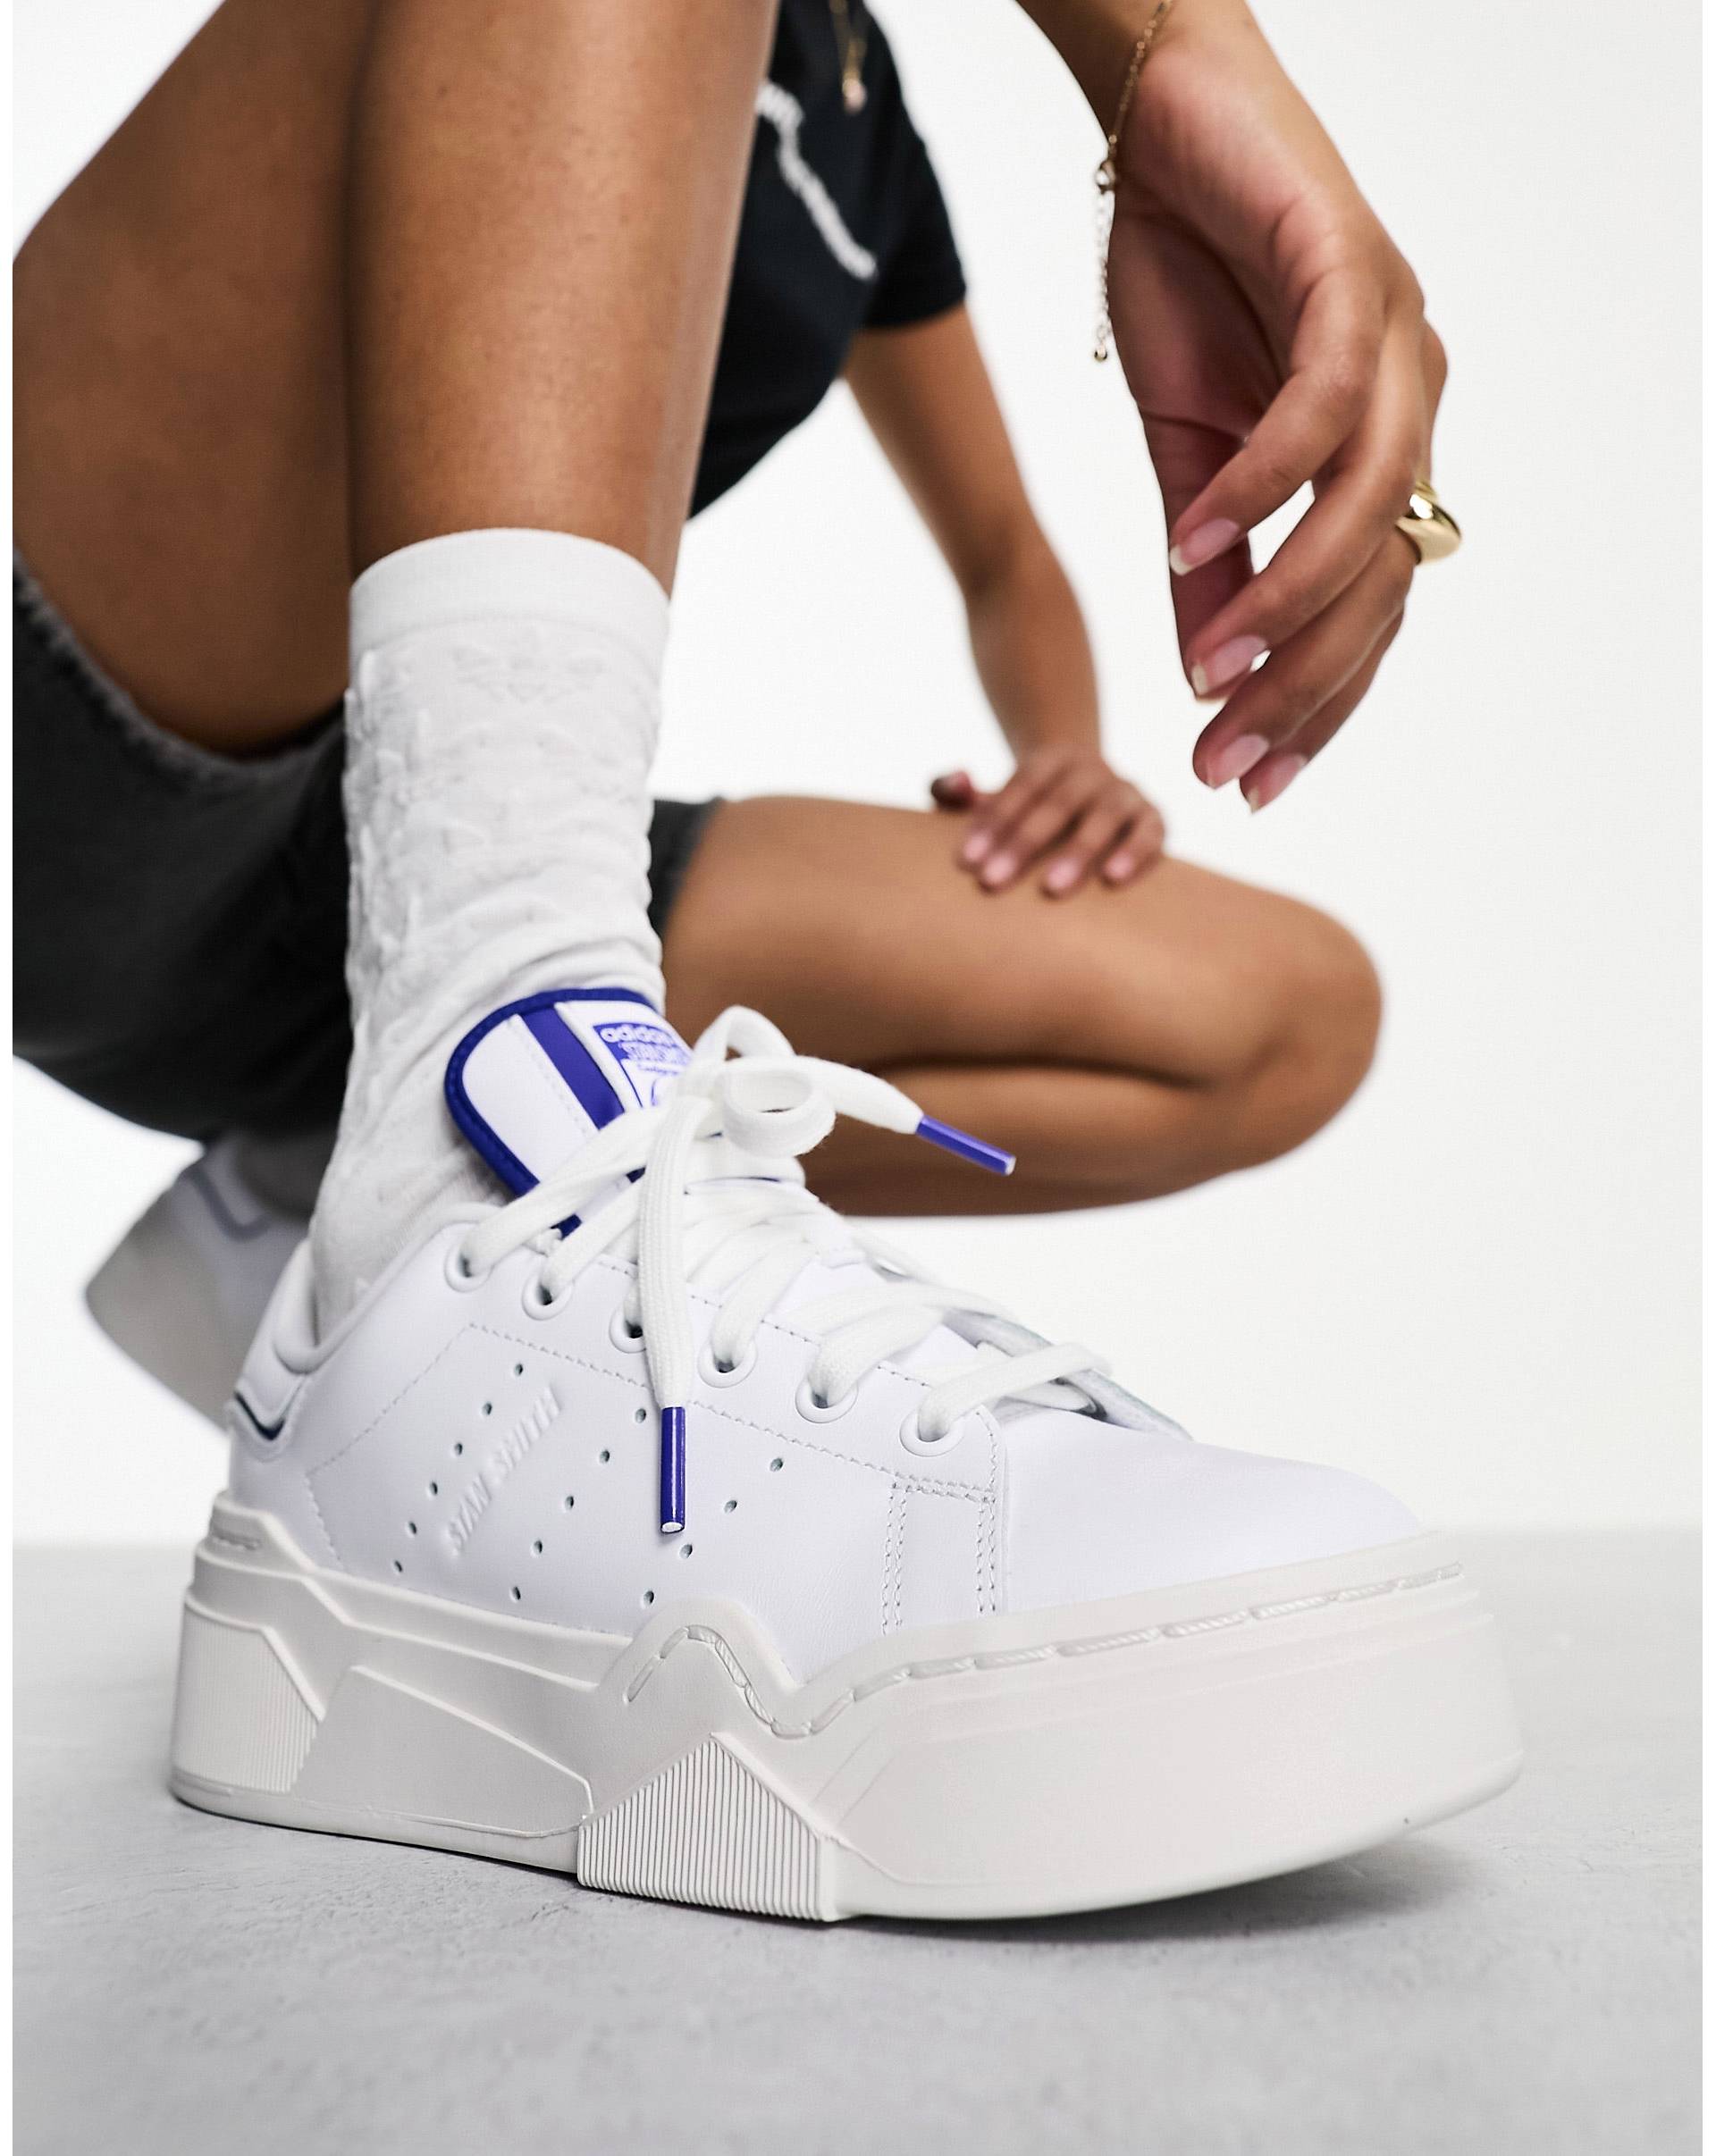 Белые кроссовки adidas Originals Stan Smith Bonega 2B